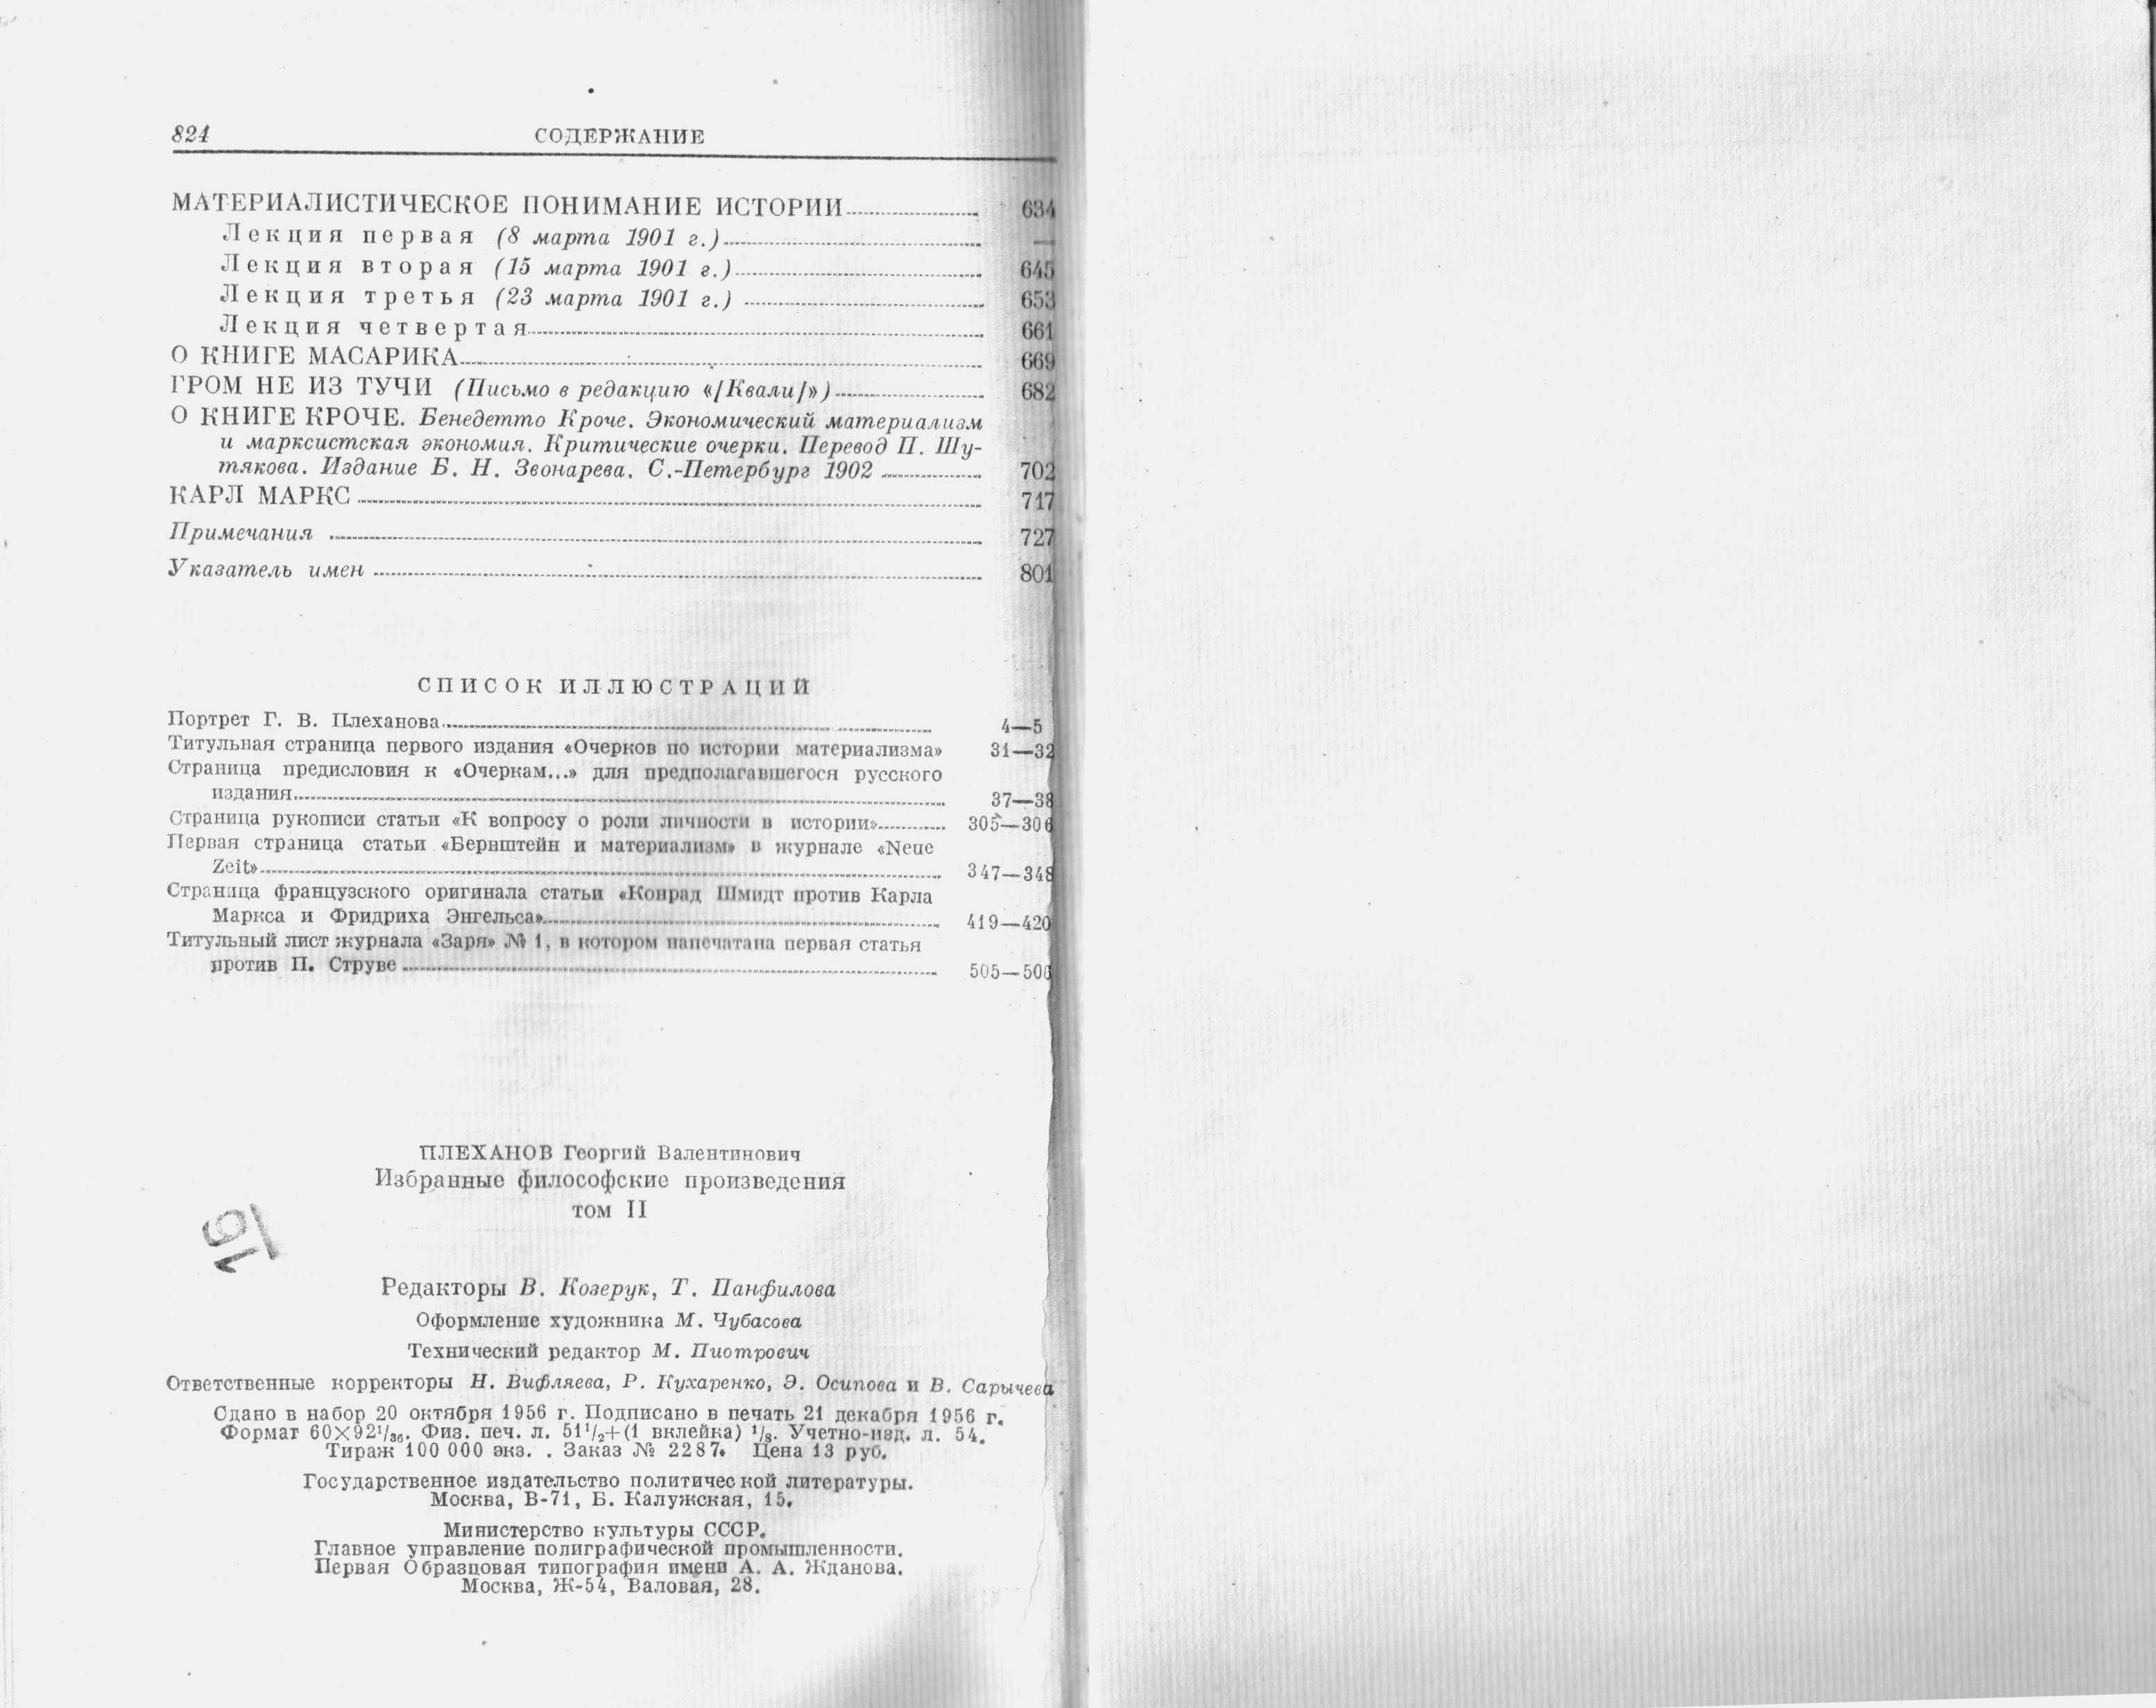 Плеханов Г.В. Избранные философские произведения. Тома 2, 4. М., 1956